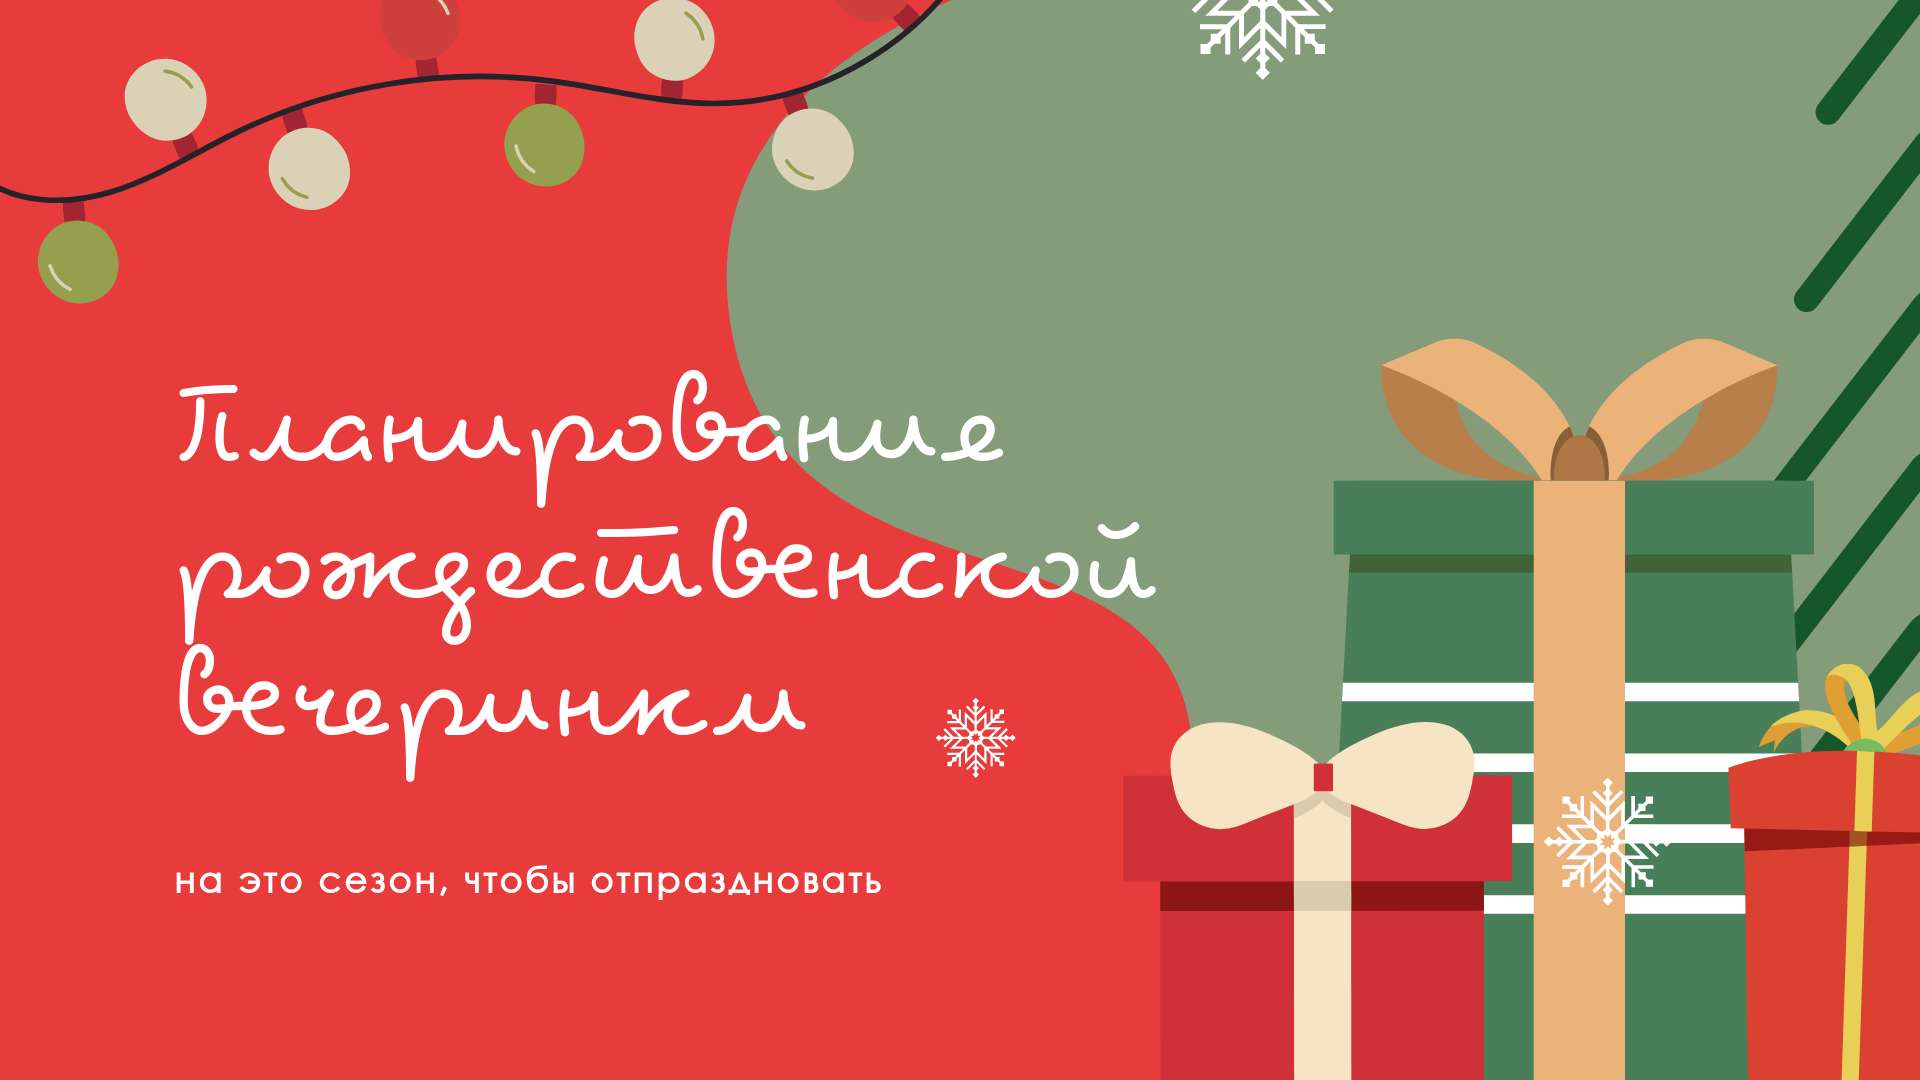 Приглашение на рождественскую вечеринку с нарисованной горой подарков с бантами на ярко-красном фоне